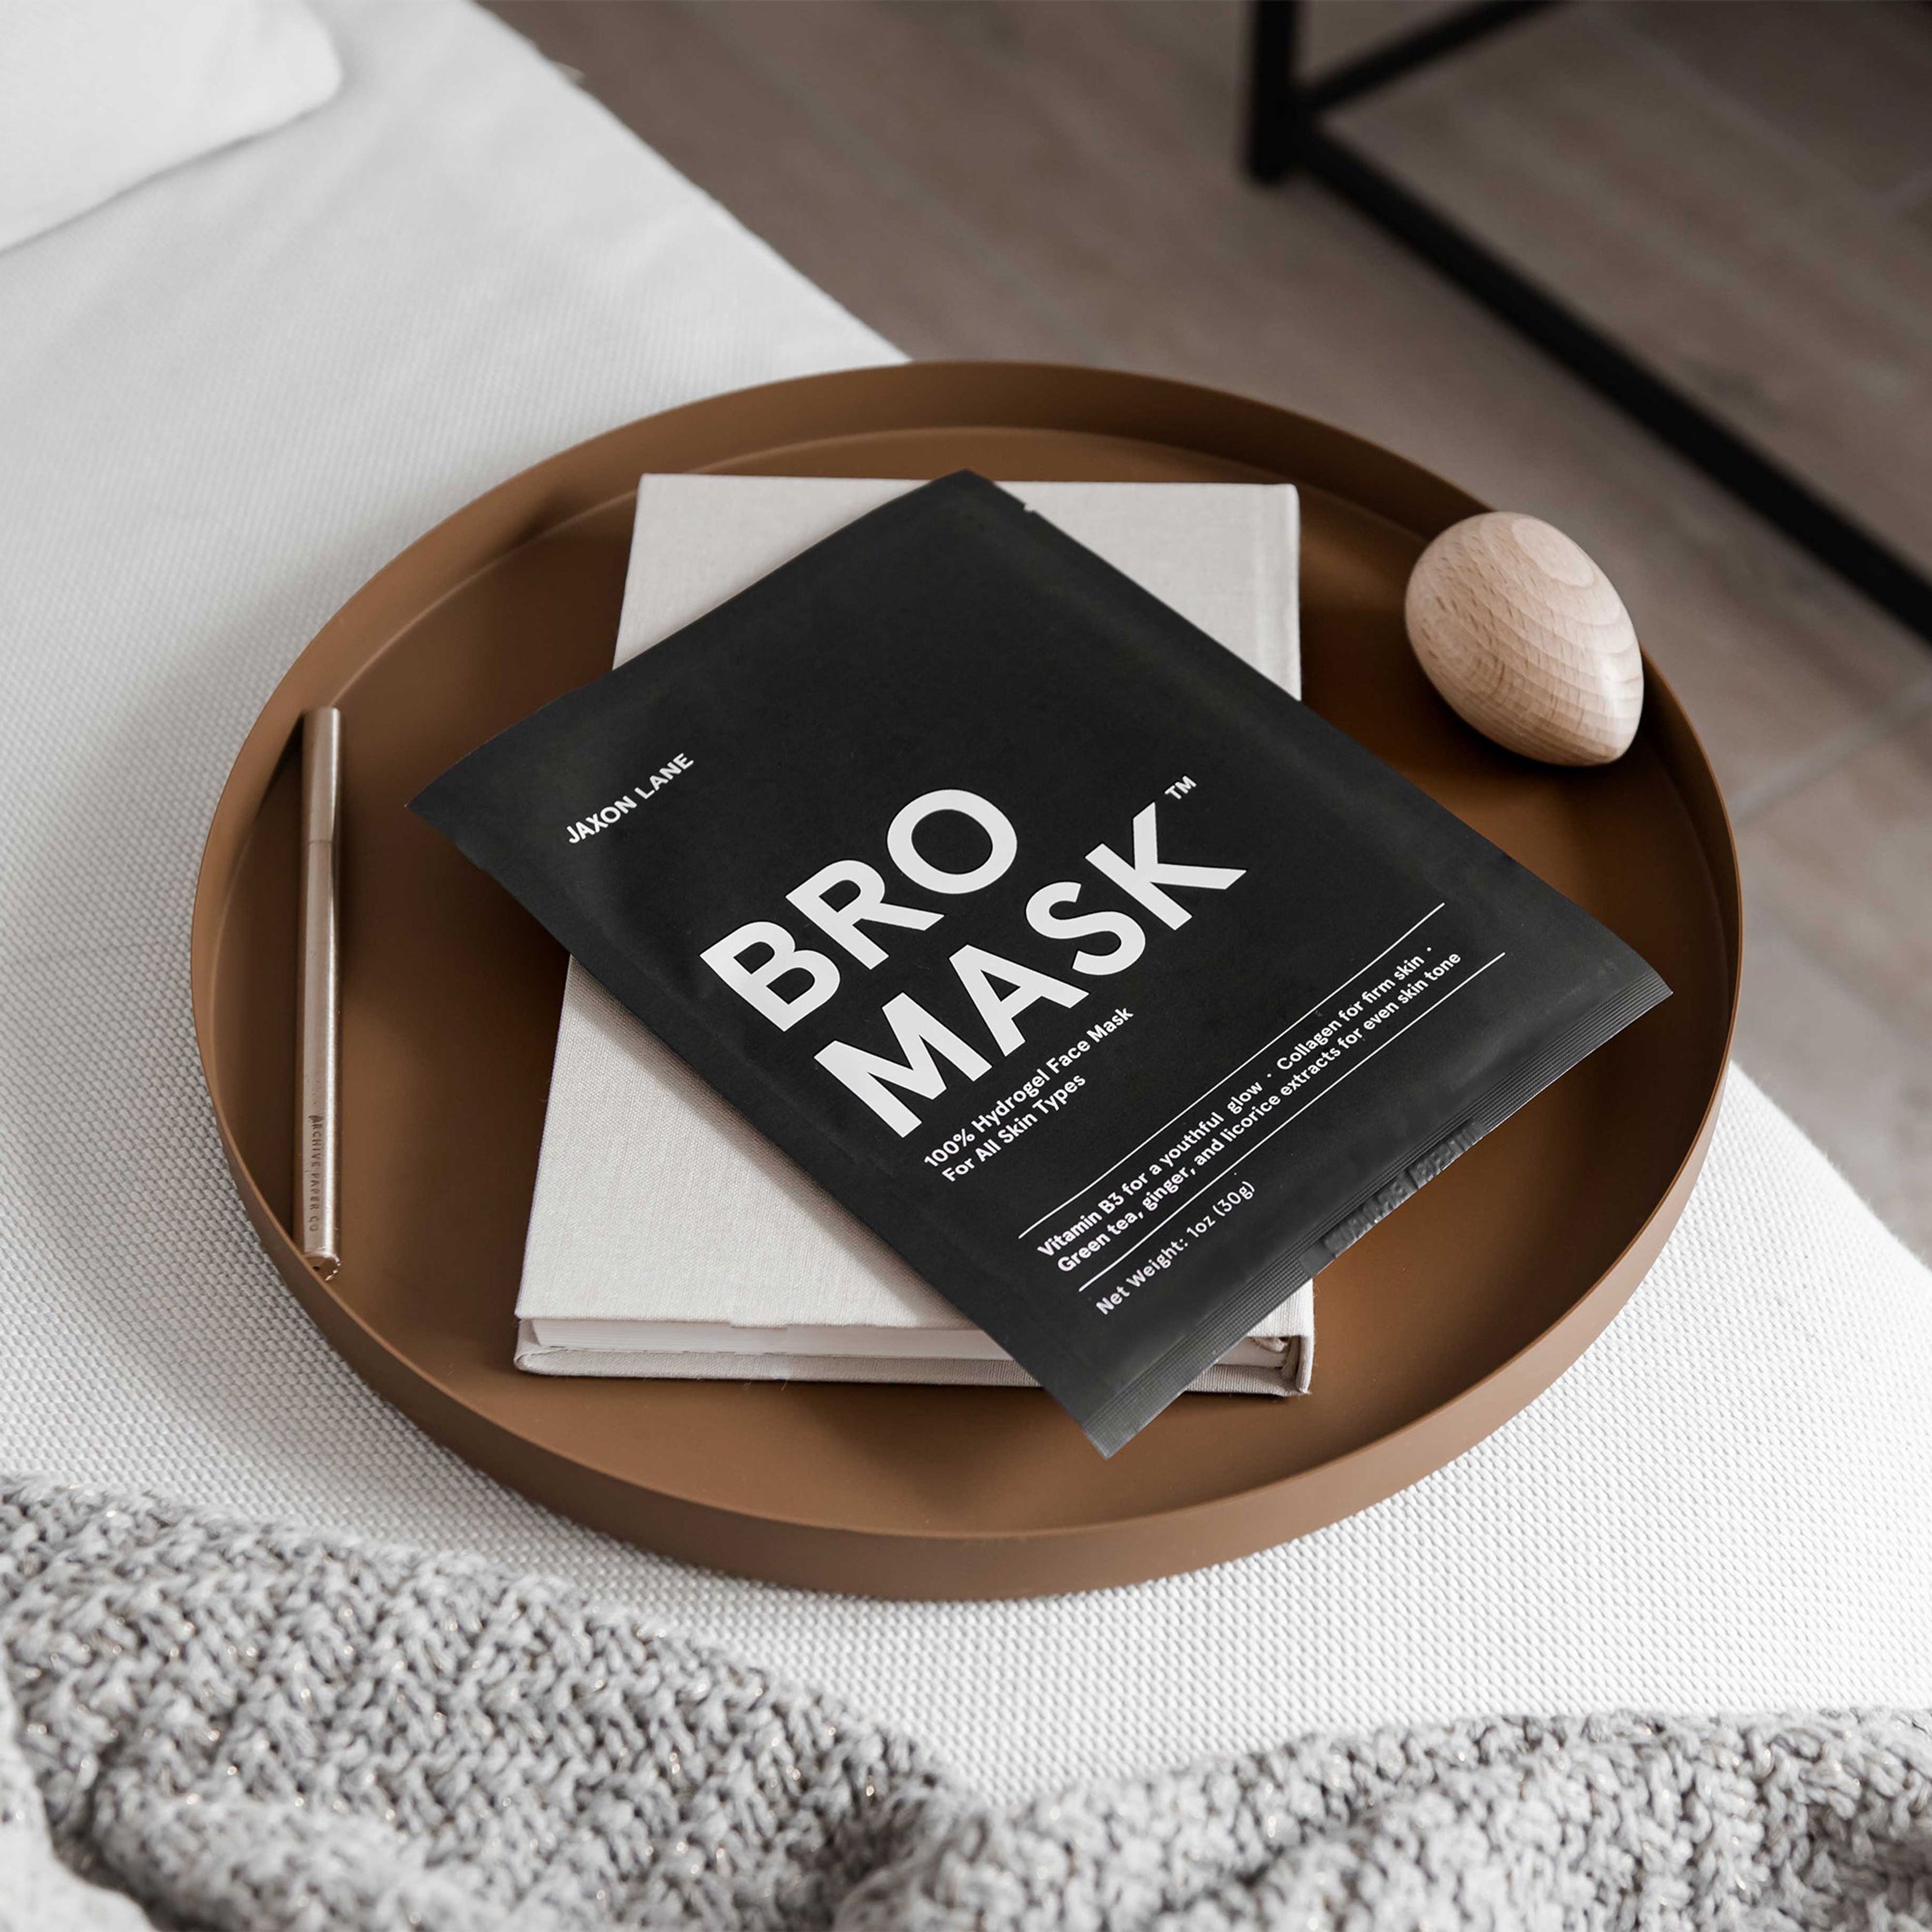 Bro Mask - Hydrogel Sheet Mask (4 Pack)